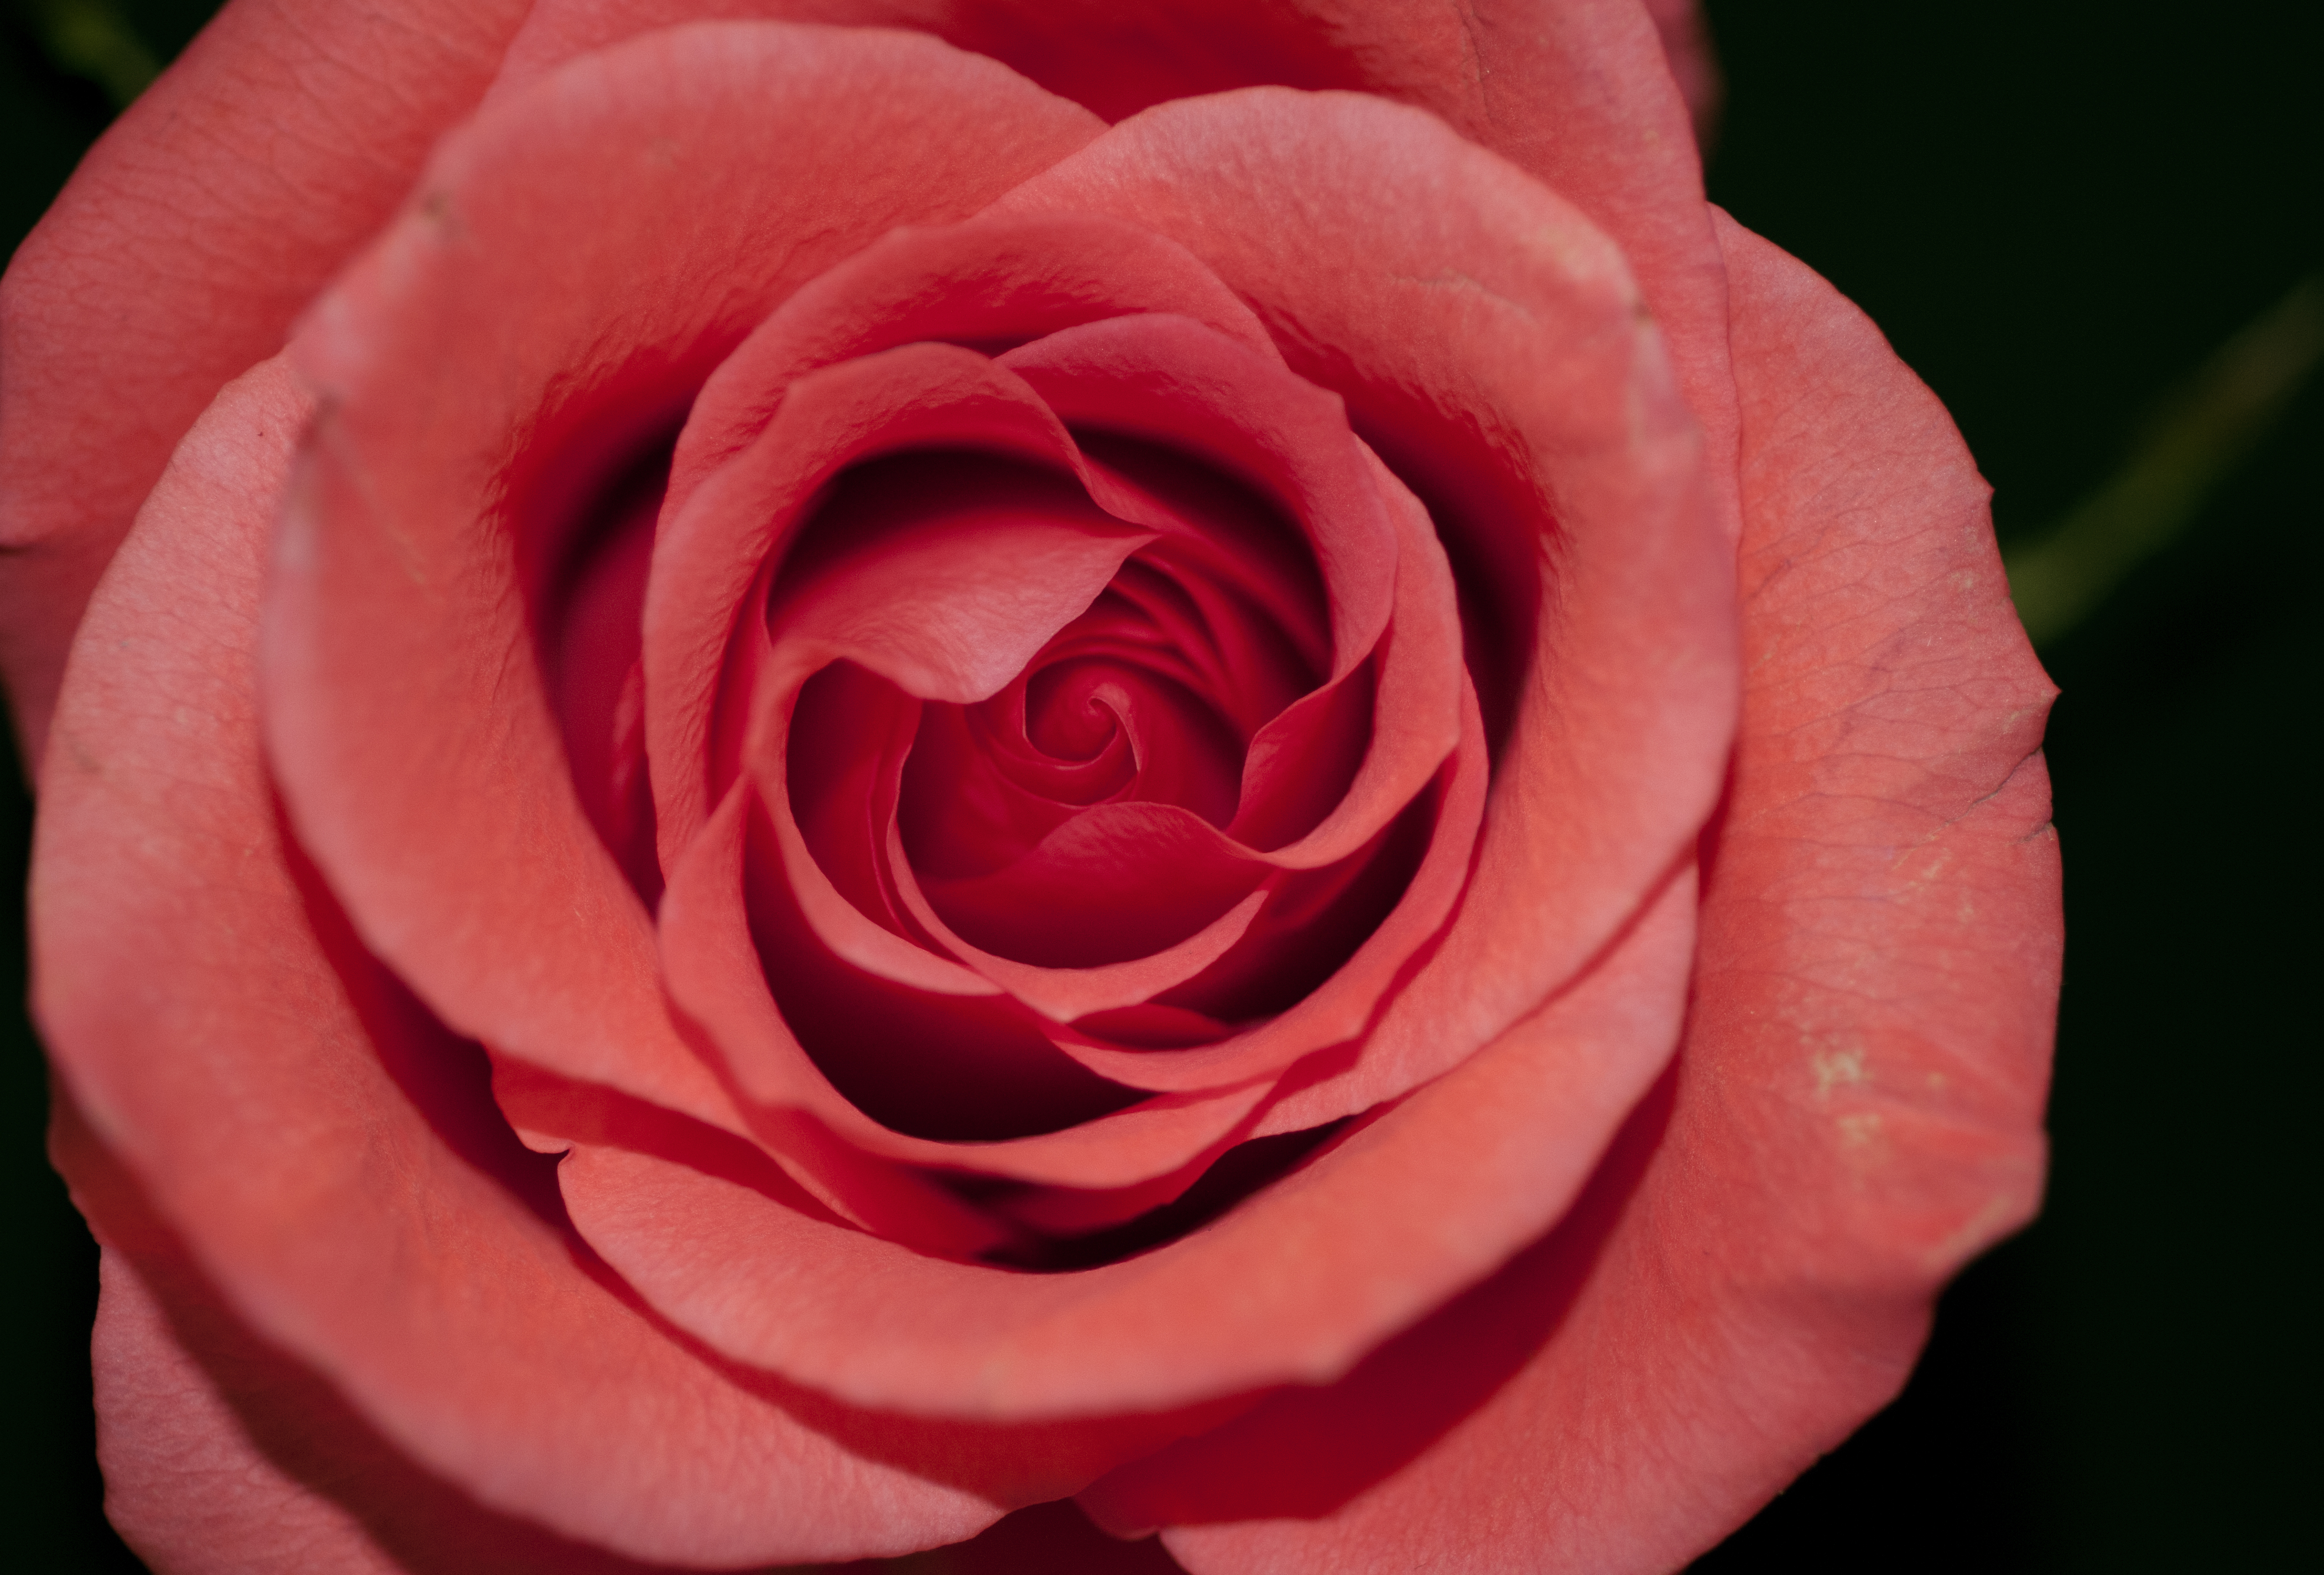 alt="rose flower depression"